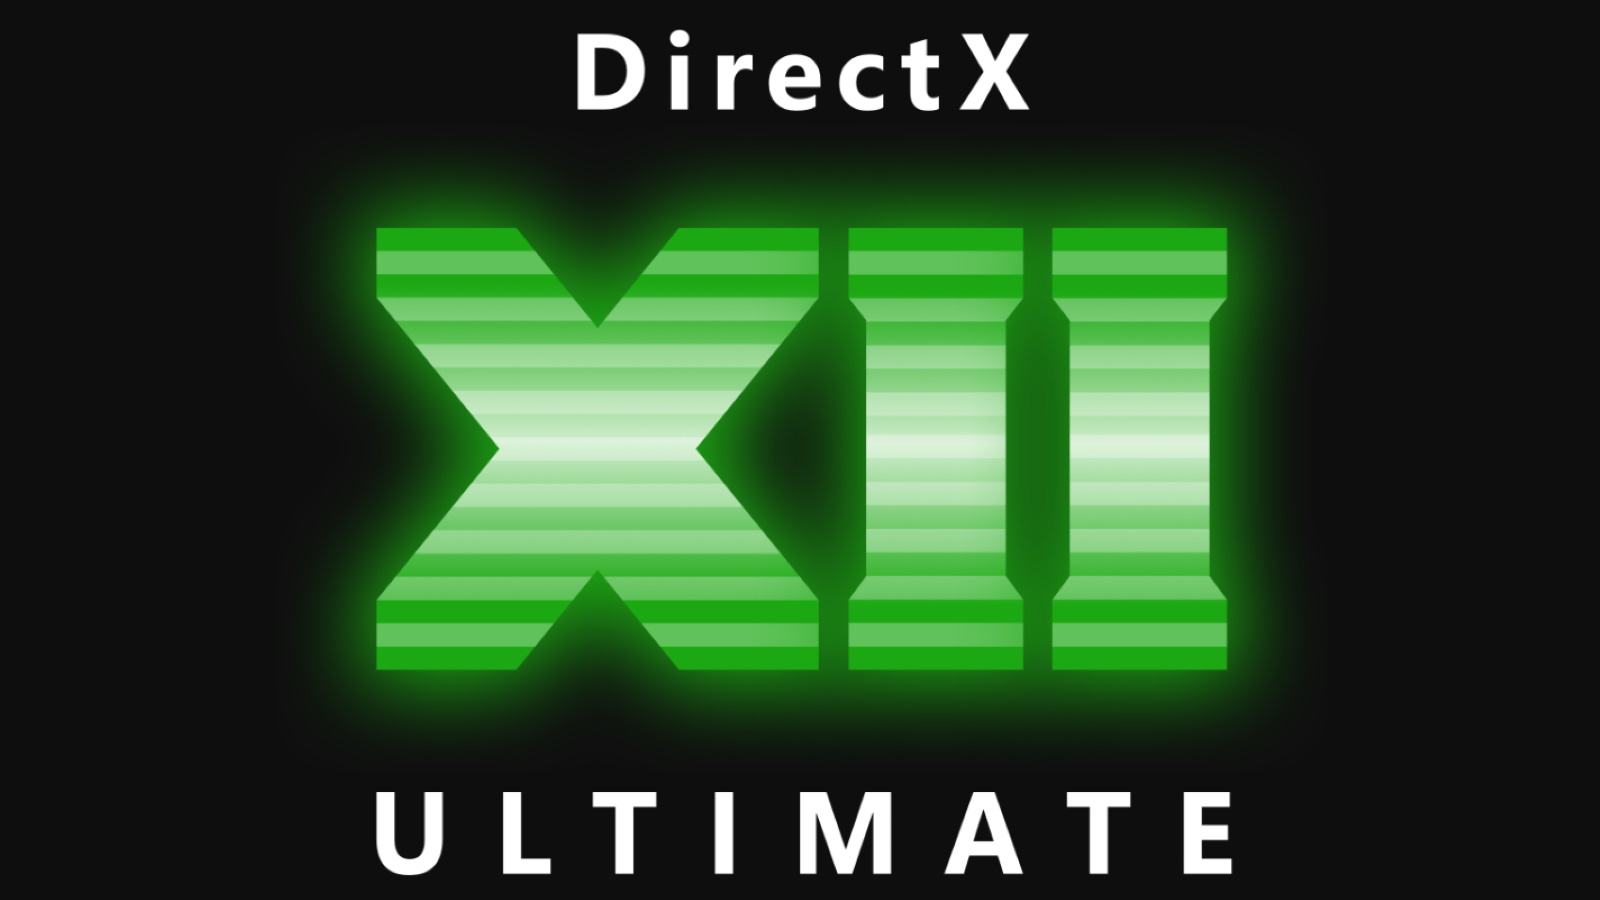 directx 12 amd download windows 10 64 bit